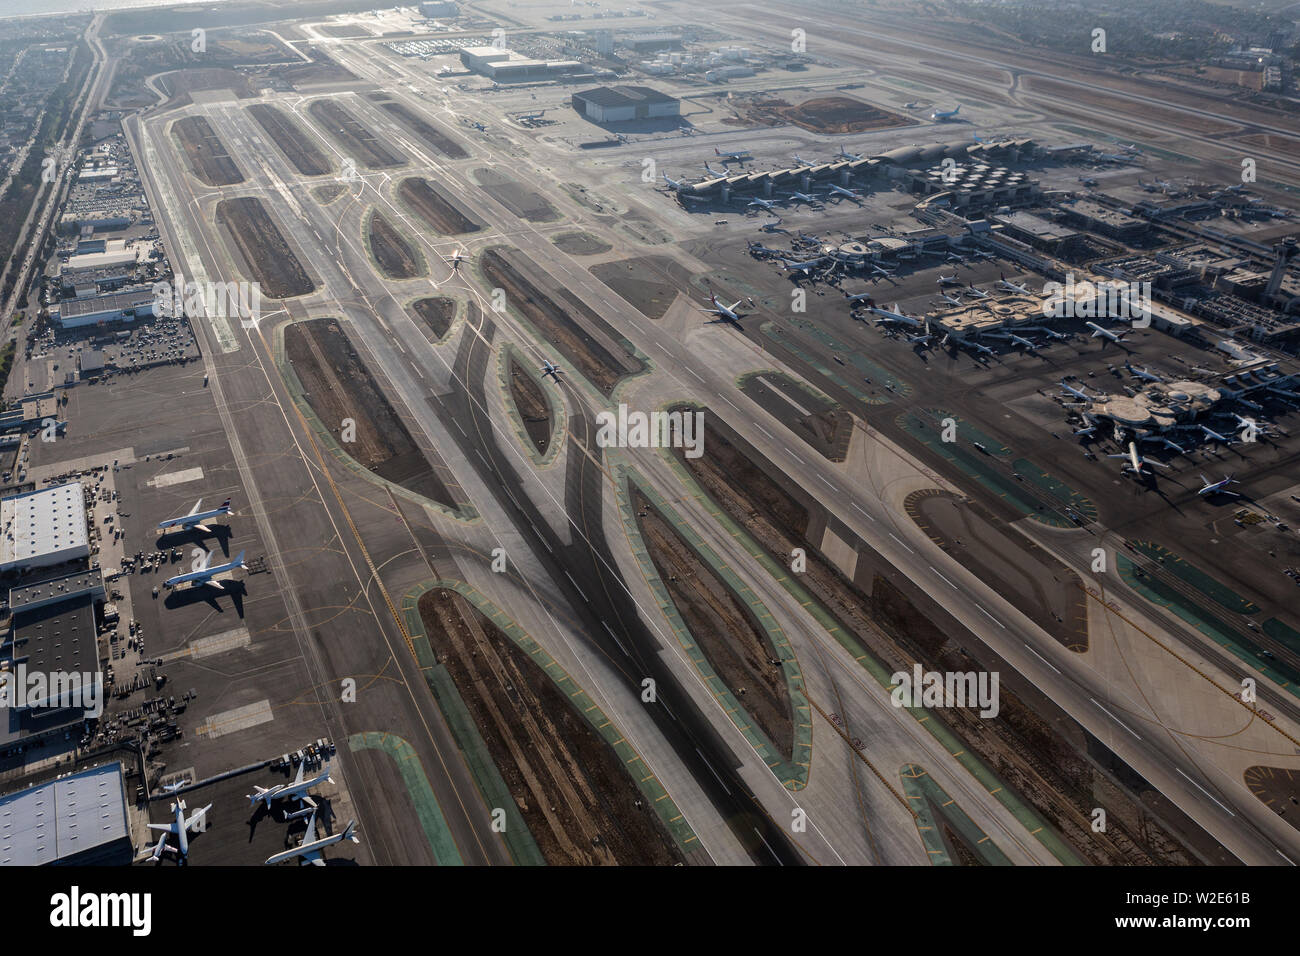 Los Angeles, Kalifornien, USA - 16. August 2016: Luftaufnahme der Start- und Landebahn und den Terminals am Flughafen LAX in Südkalifornien. Stockfoto